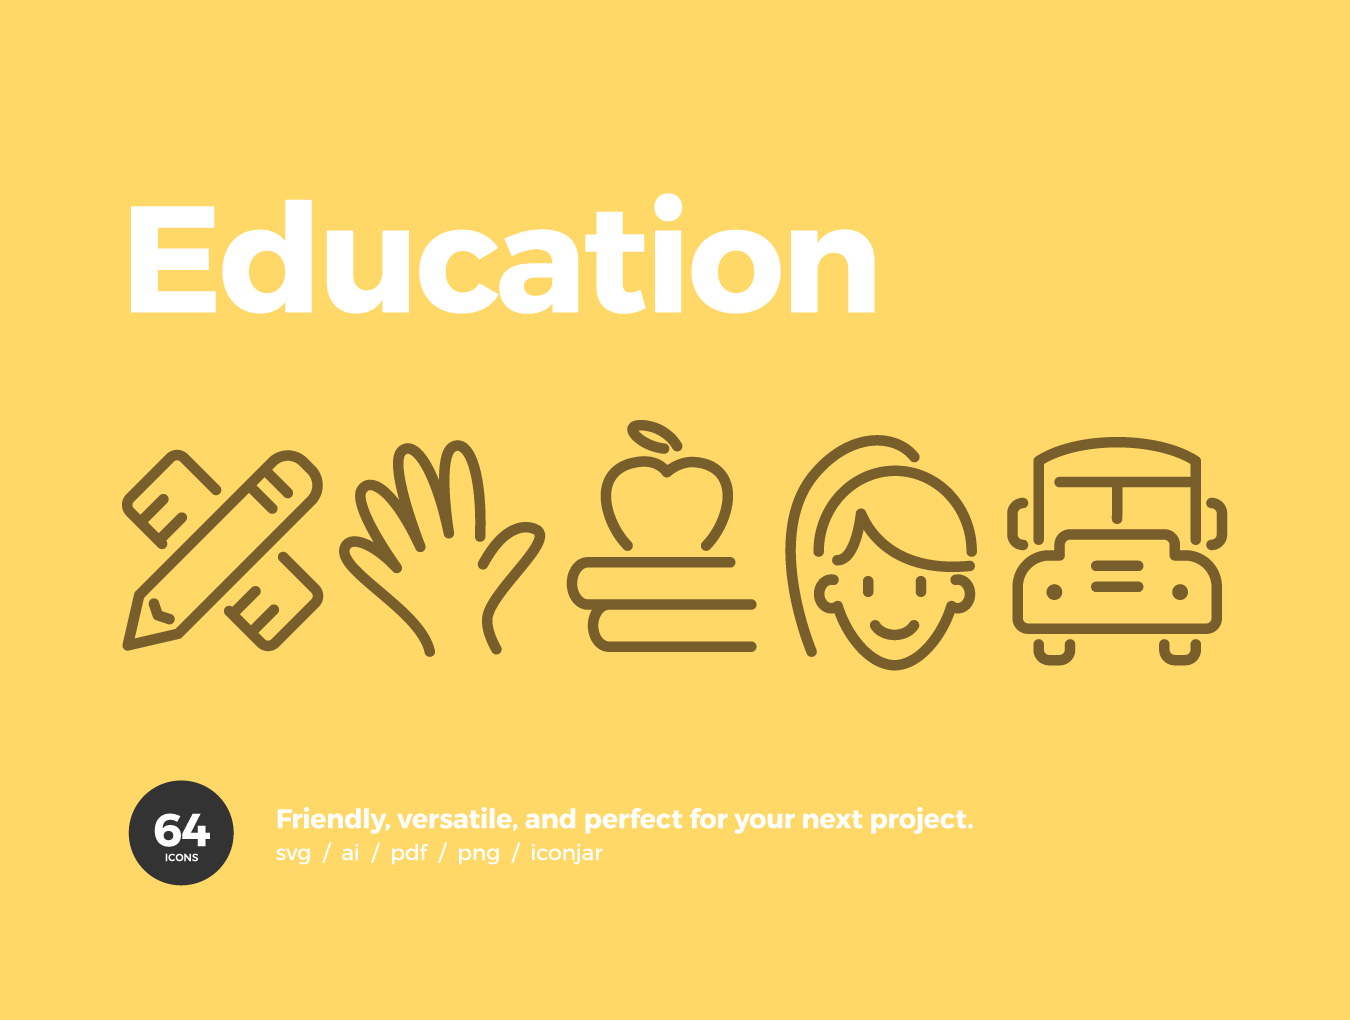 教育相关的可爱图标套装下载Education Icons #